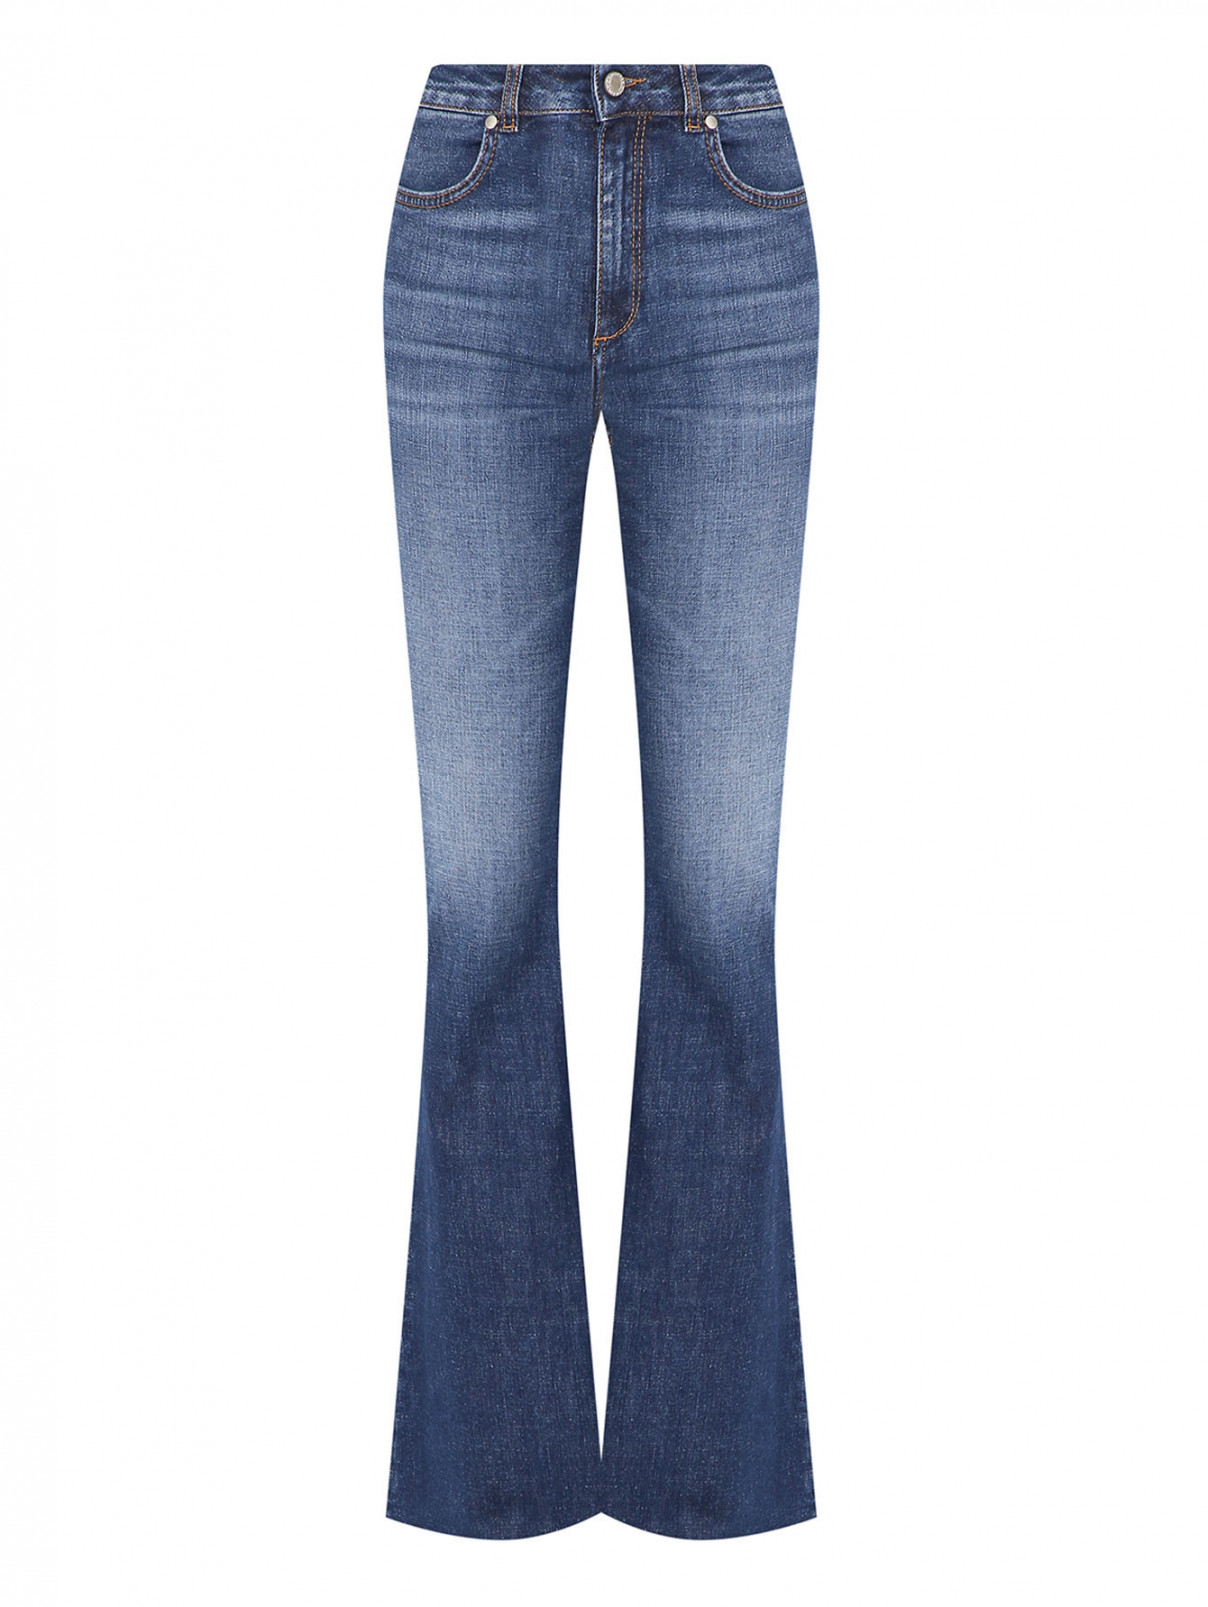 Расклешенные джинсы из хлопка Dorothee Schumacher  –  Общий вид  – Цвет:  Синий